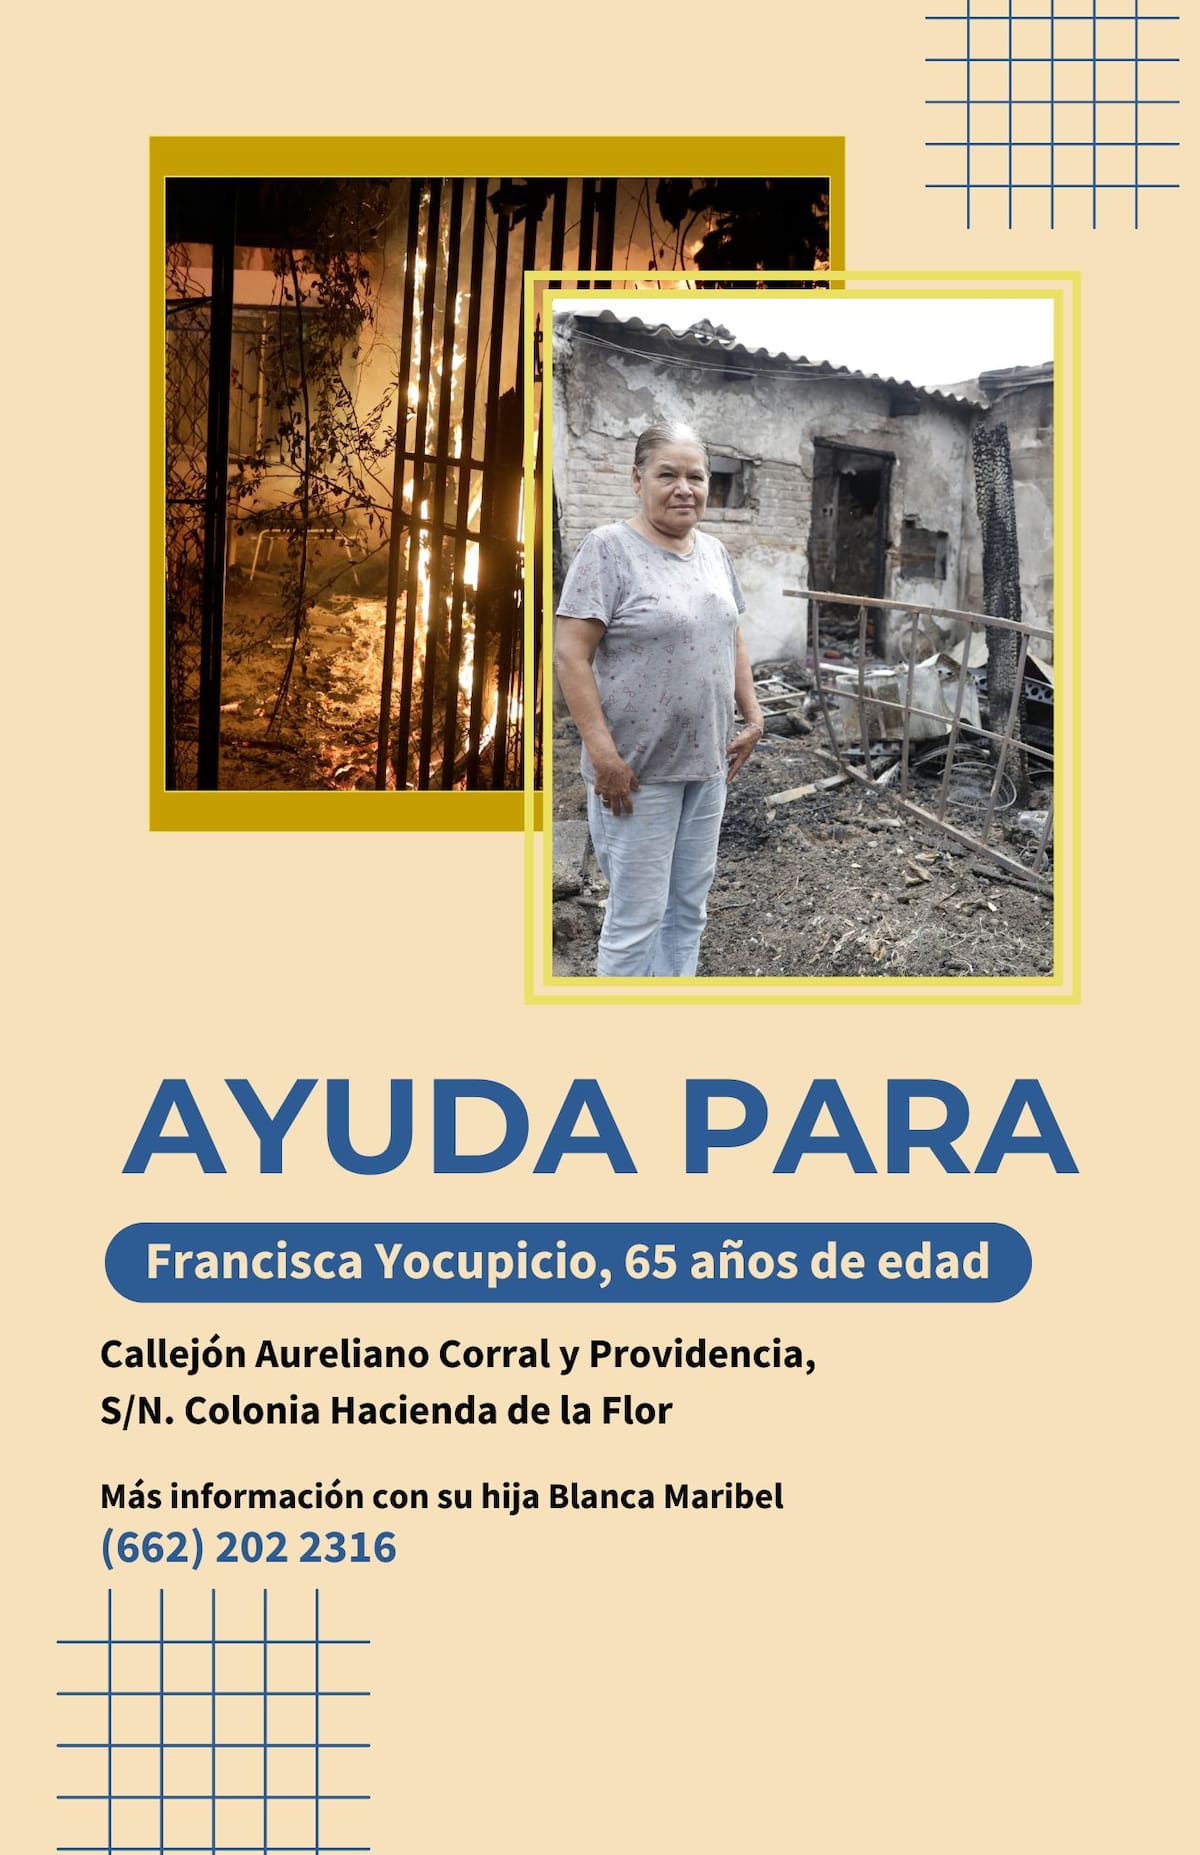 Un devastador incendio consumió la casa de Francisca Yocupicio, de 65 años, dejando a ella y su familia sin hogar y sin pertenencias. Foto: Especial